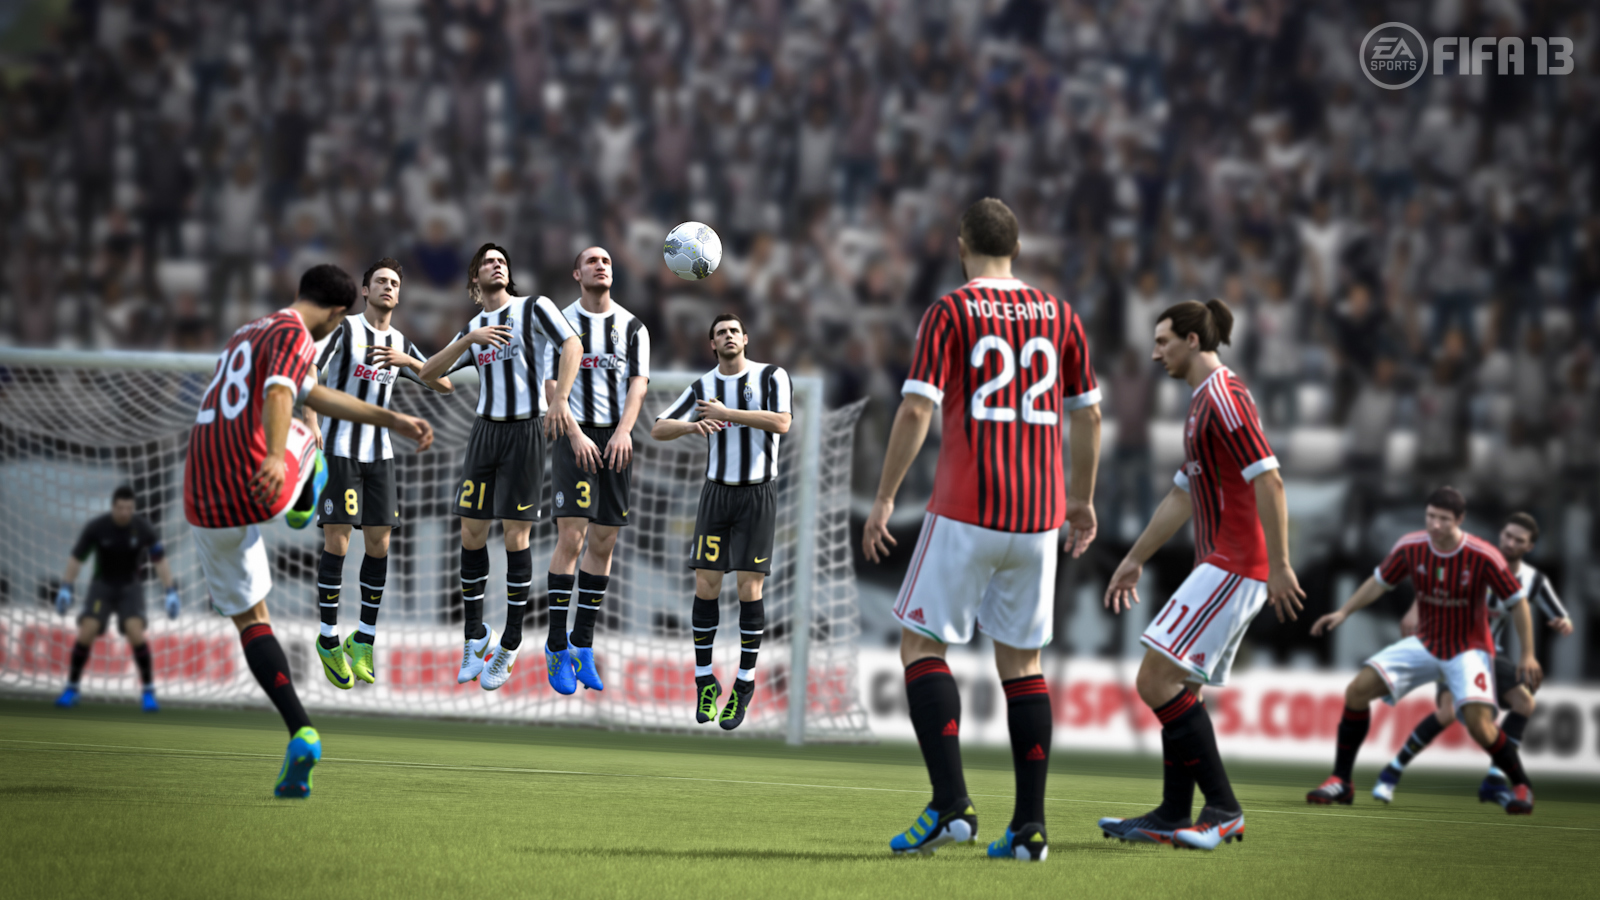 FIFA 13 Free Kick